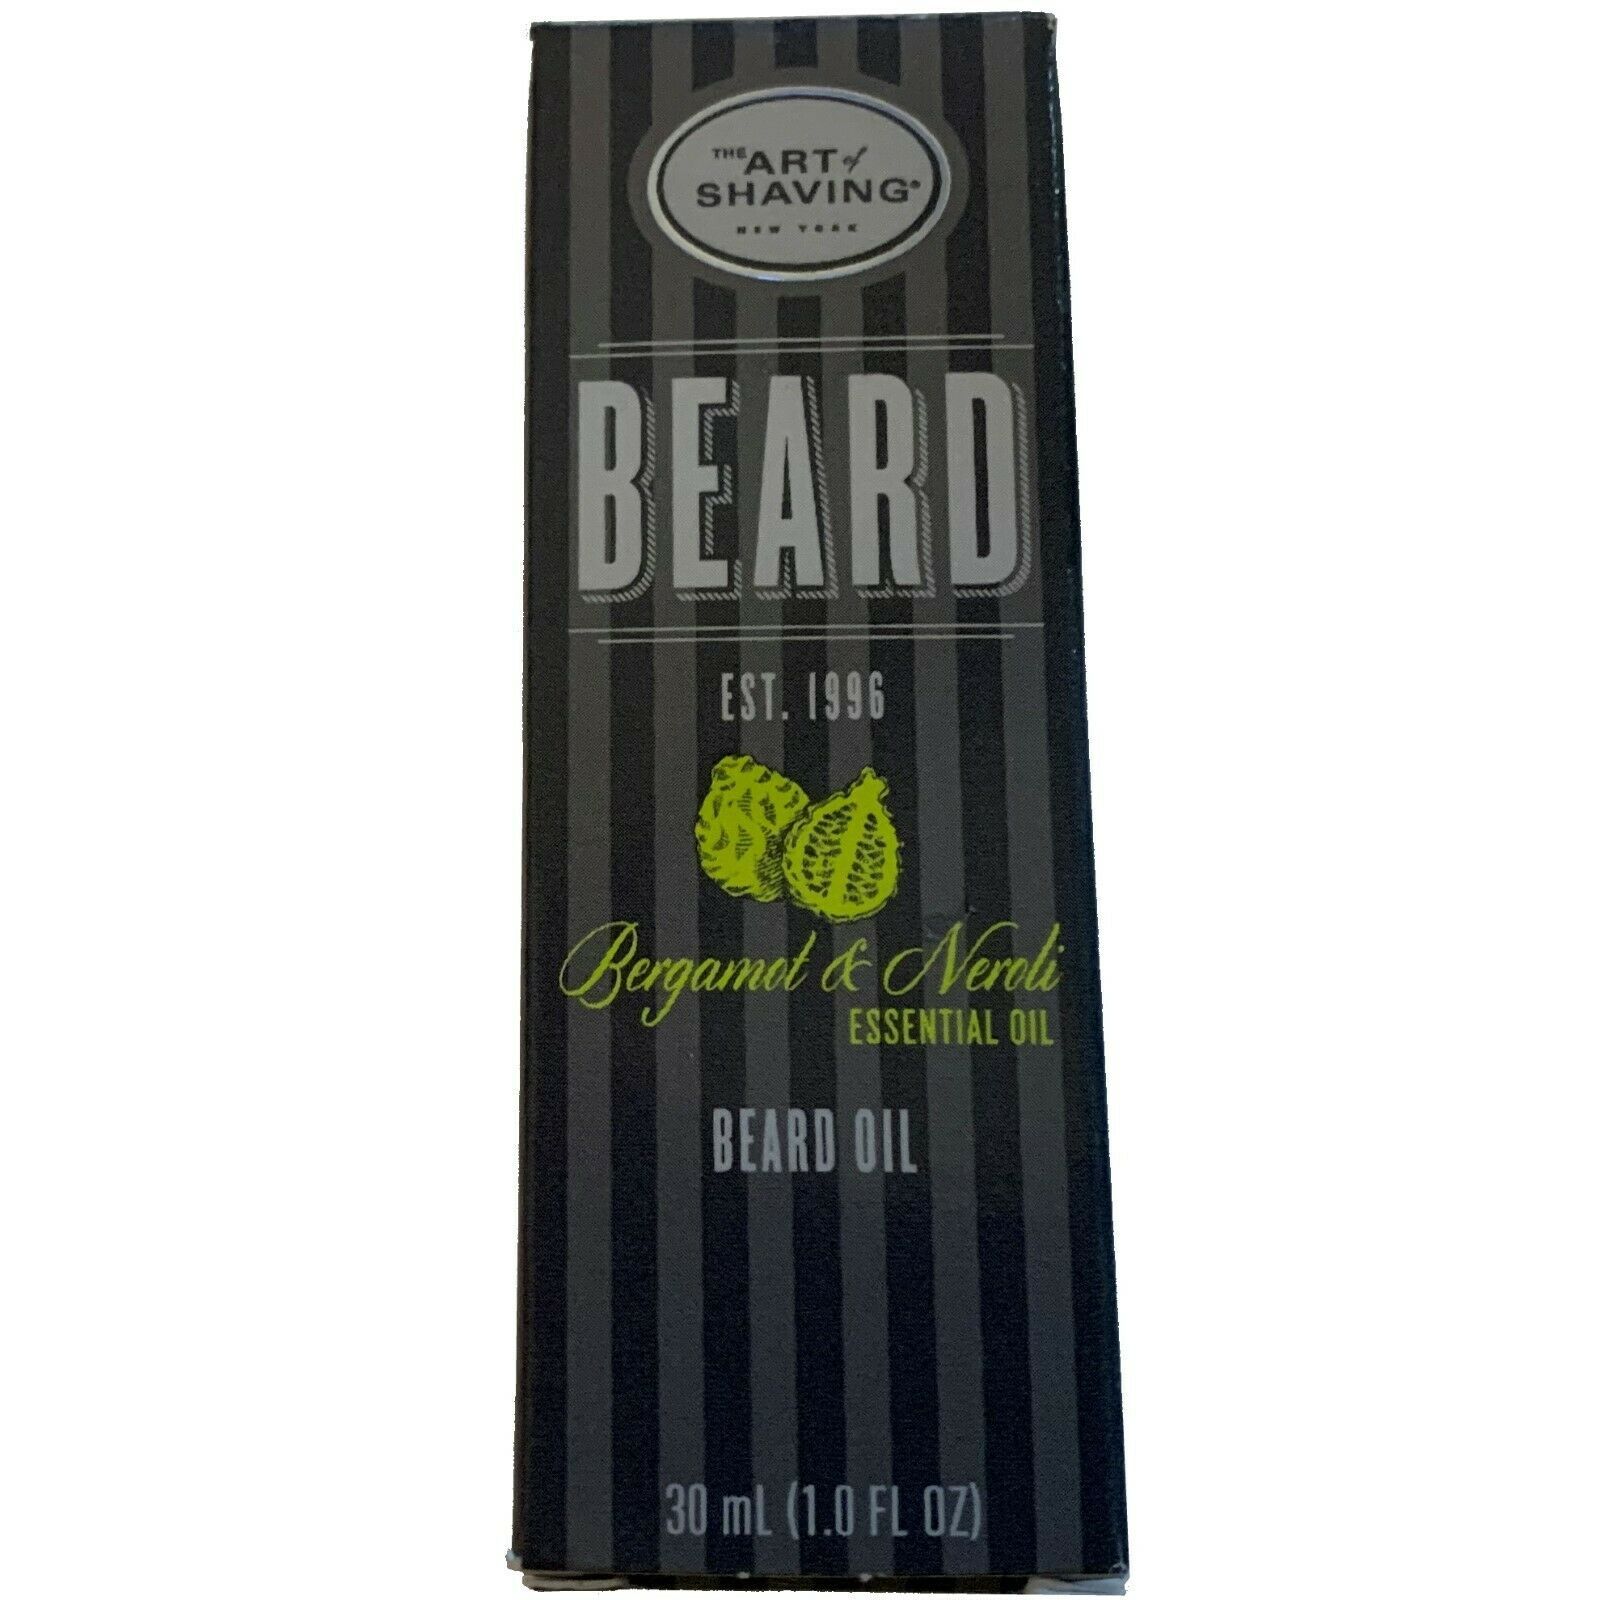 The Art Of Shaving Beard Oil - Burgamot & Neroli Essential Oil   30ml/1oz - $19.99